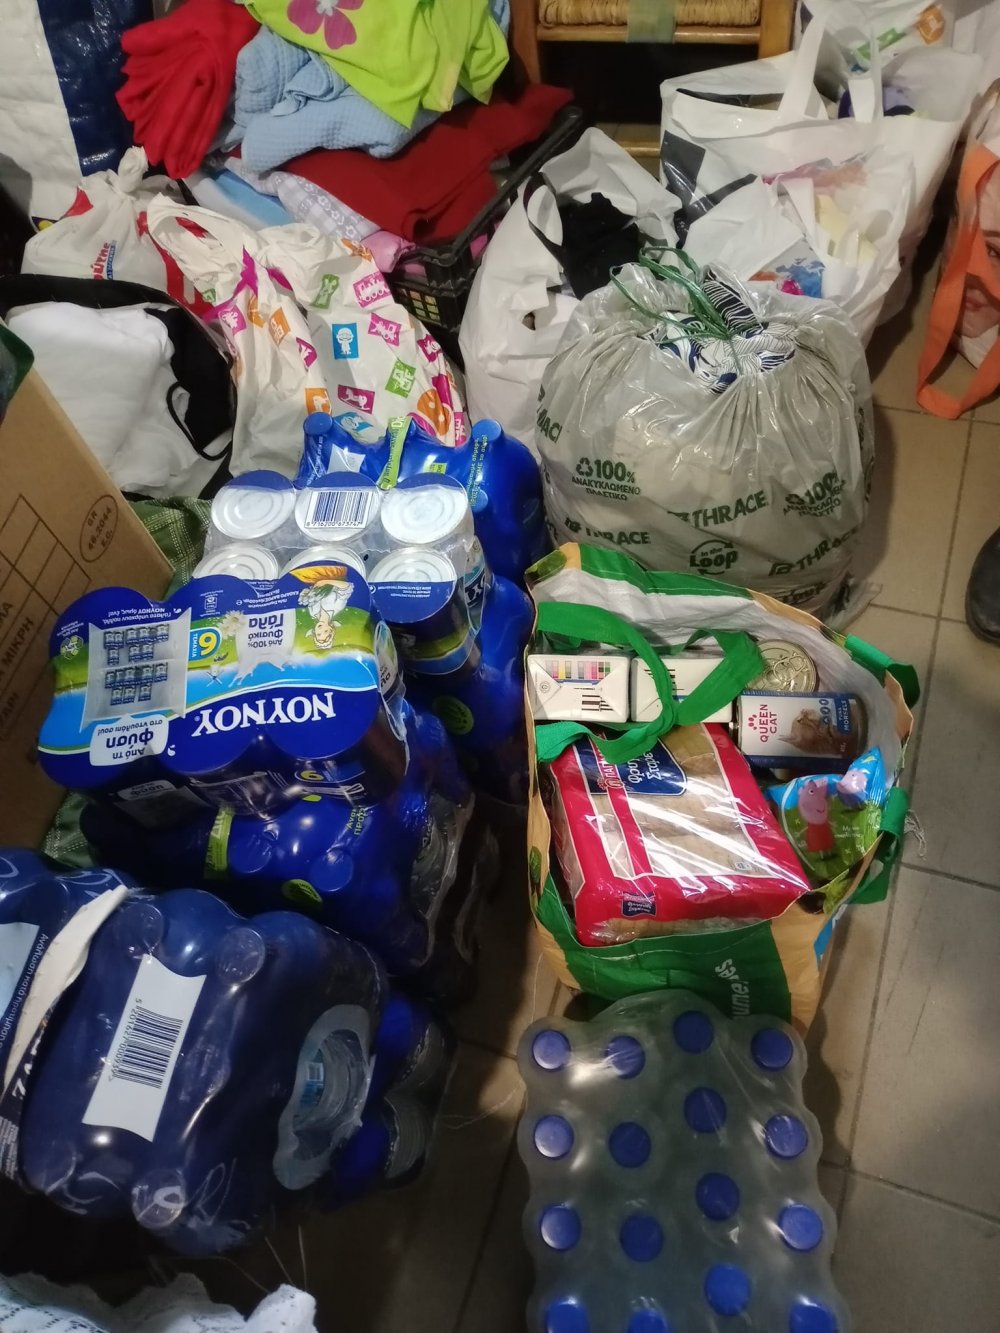 Η Κουζίνα Αλληλεγγύης Βόλου έλαβε αναγκαία αγαθά από τους κατοίκους της Πέλλας και Θεσσαλονίκης για τους πλημμυροπαθείς της περιοχής μας